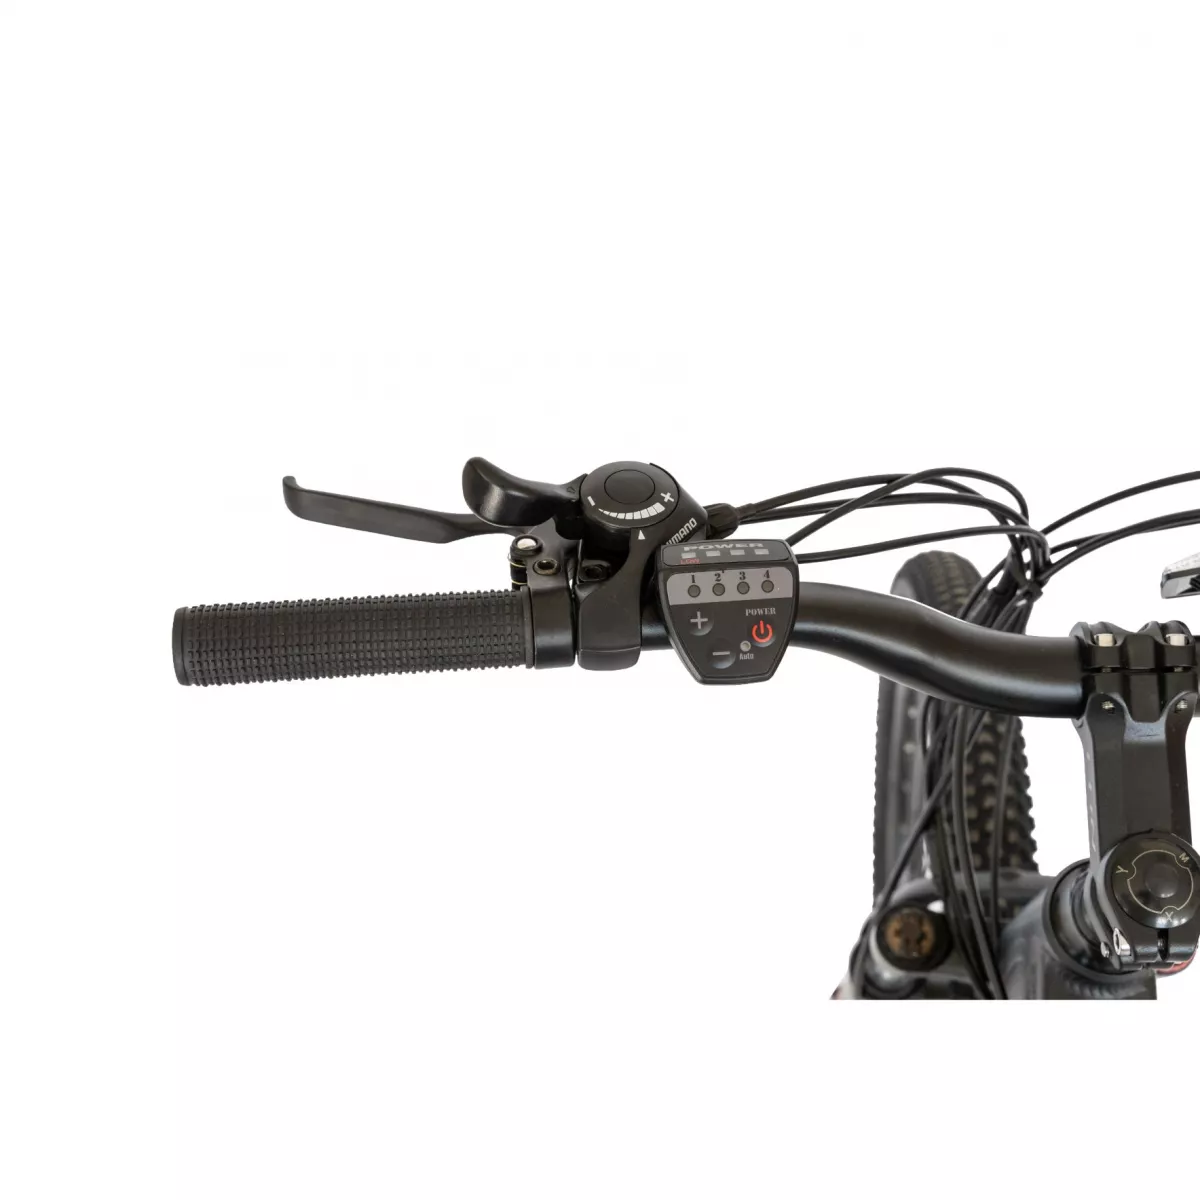 Bicicleta electrica MTB (E-BIKE) CARPAT 27.5" I1008E, cadru aluminiu, frane mecanice disc, echipare SHIMANO 21 viteze, culoare negru/rosu